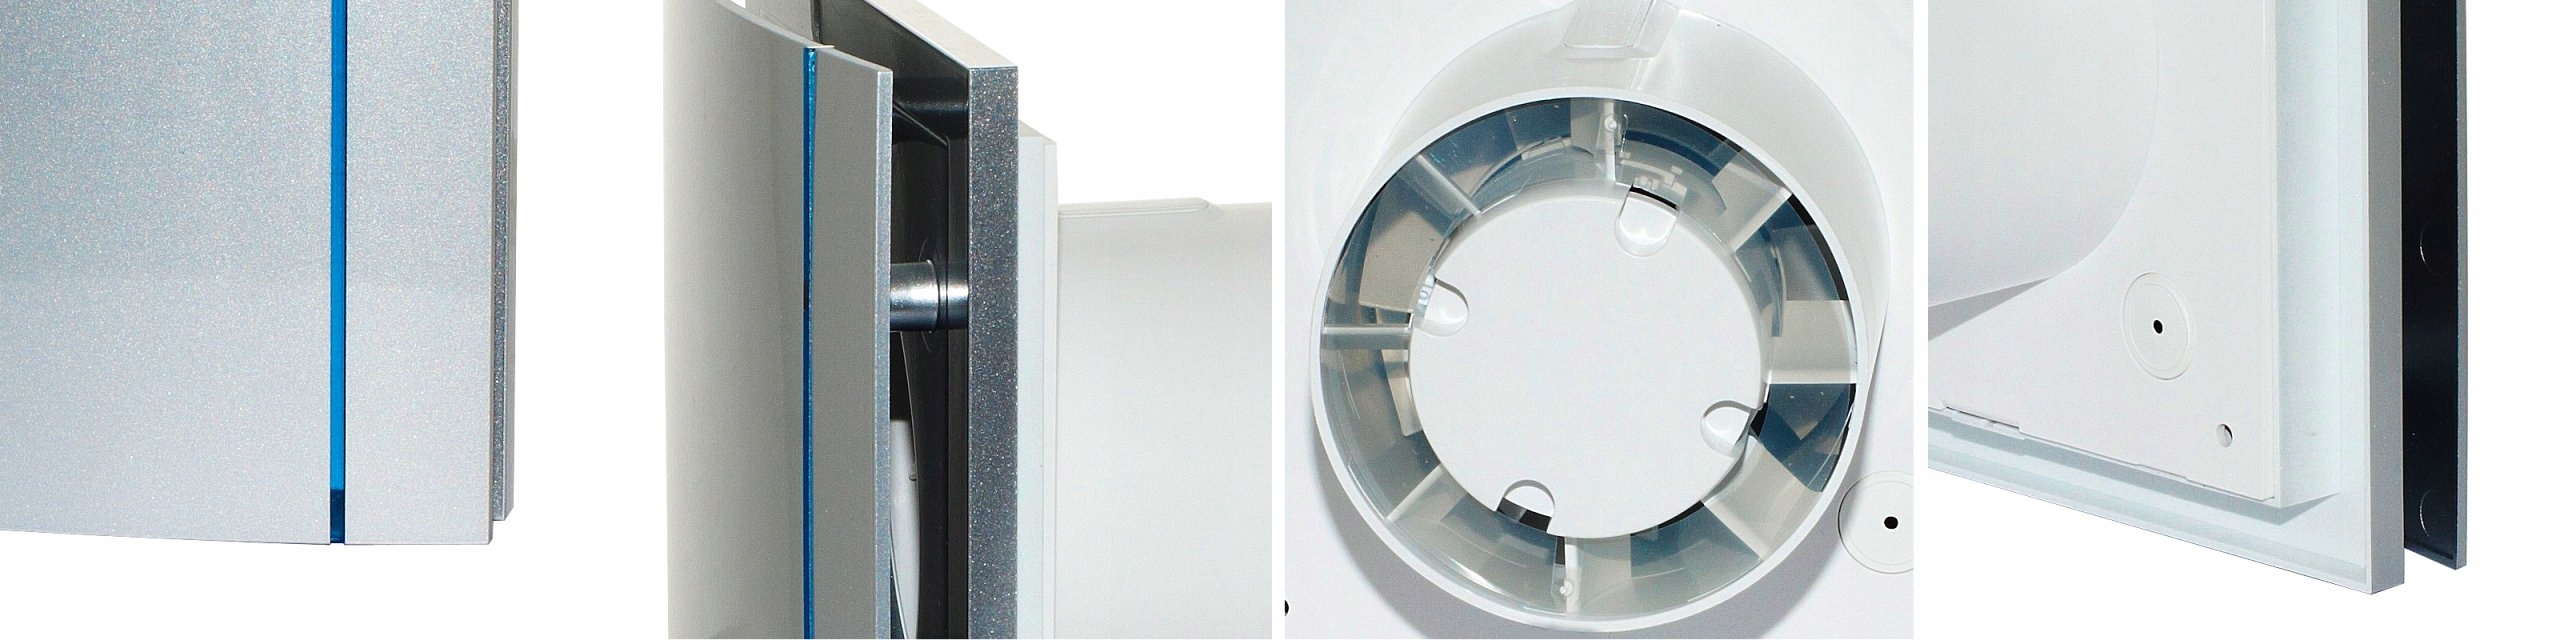 Wentylator łazienkowy SILENT 100CHZ SILVER DESIGN Waga produktu z opakowaniem jednostkowym 0.65 kg